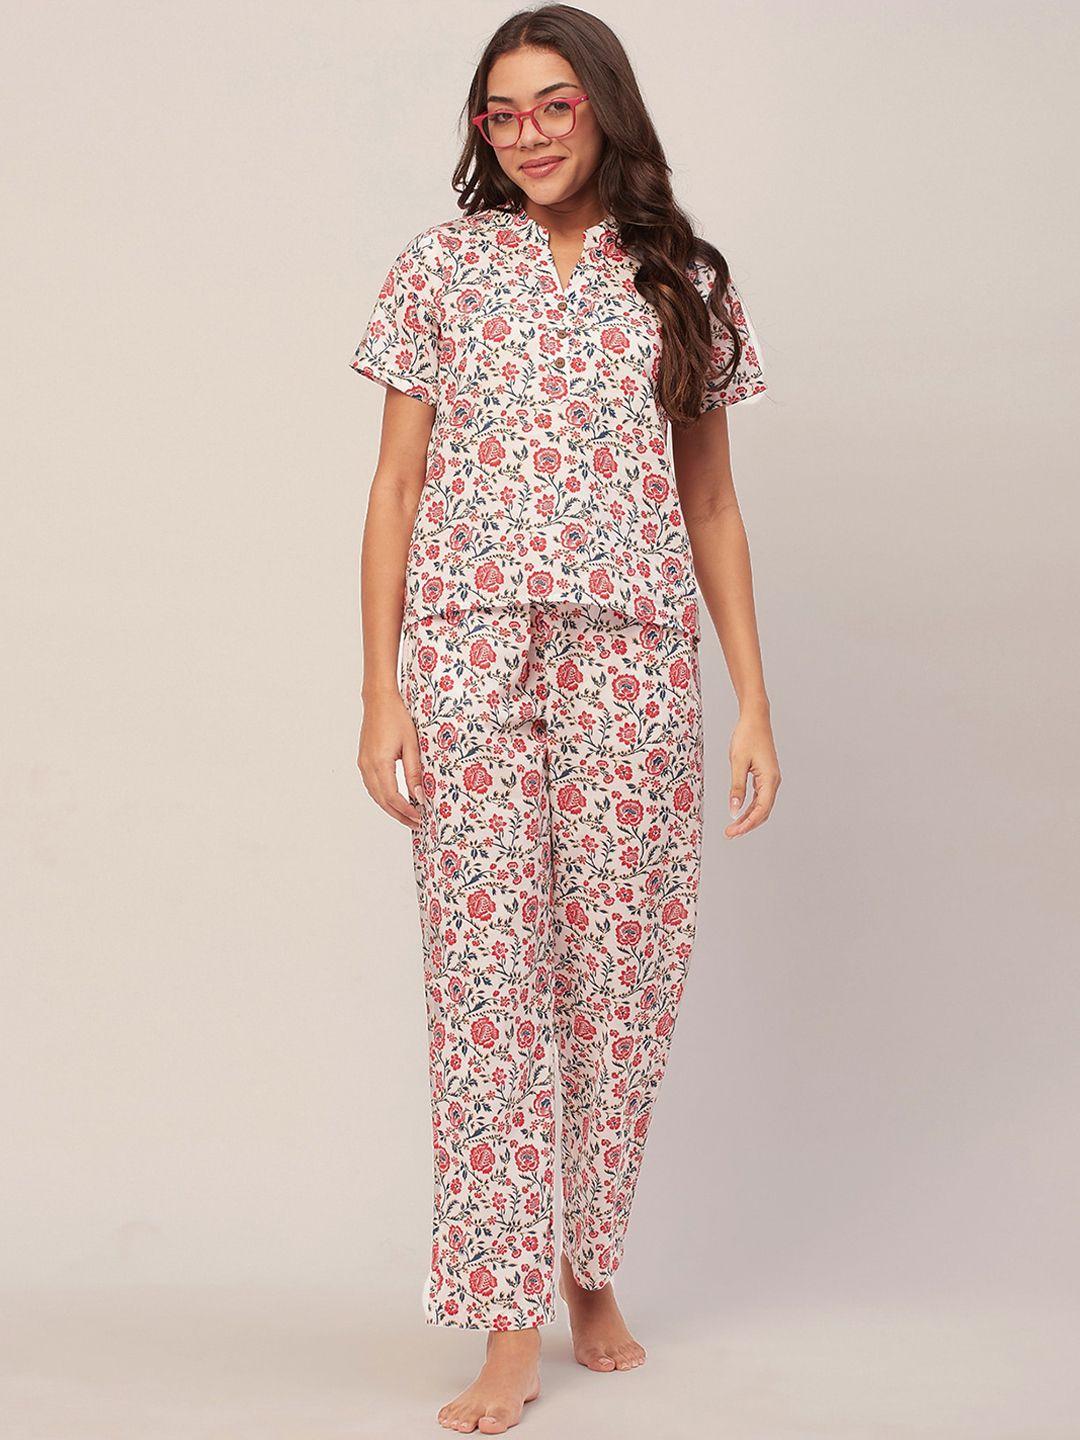 moomaya floral printed mandarin collar pure cotton top & pyjama